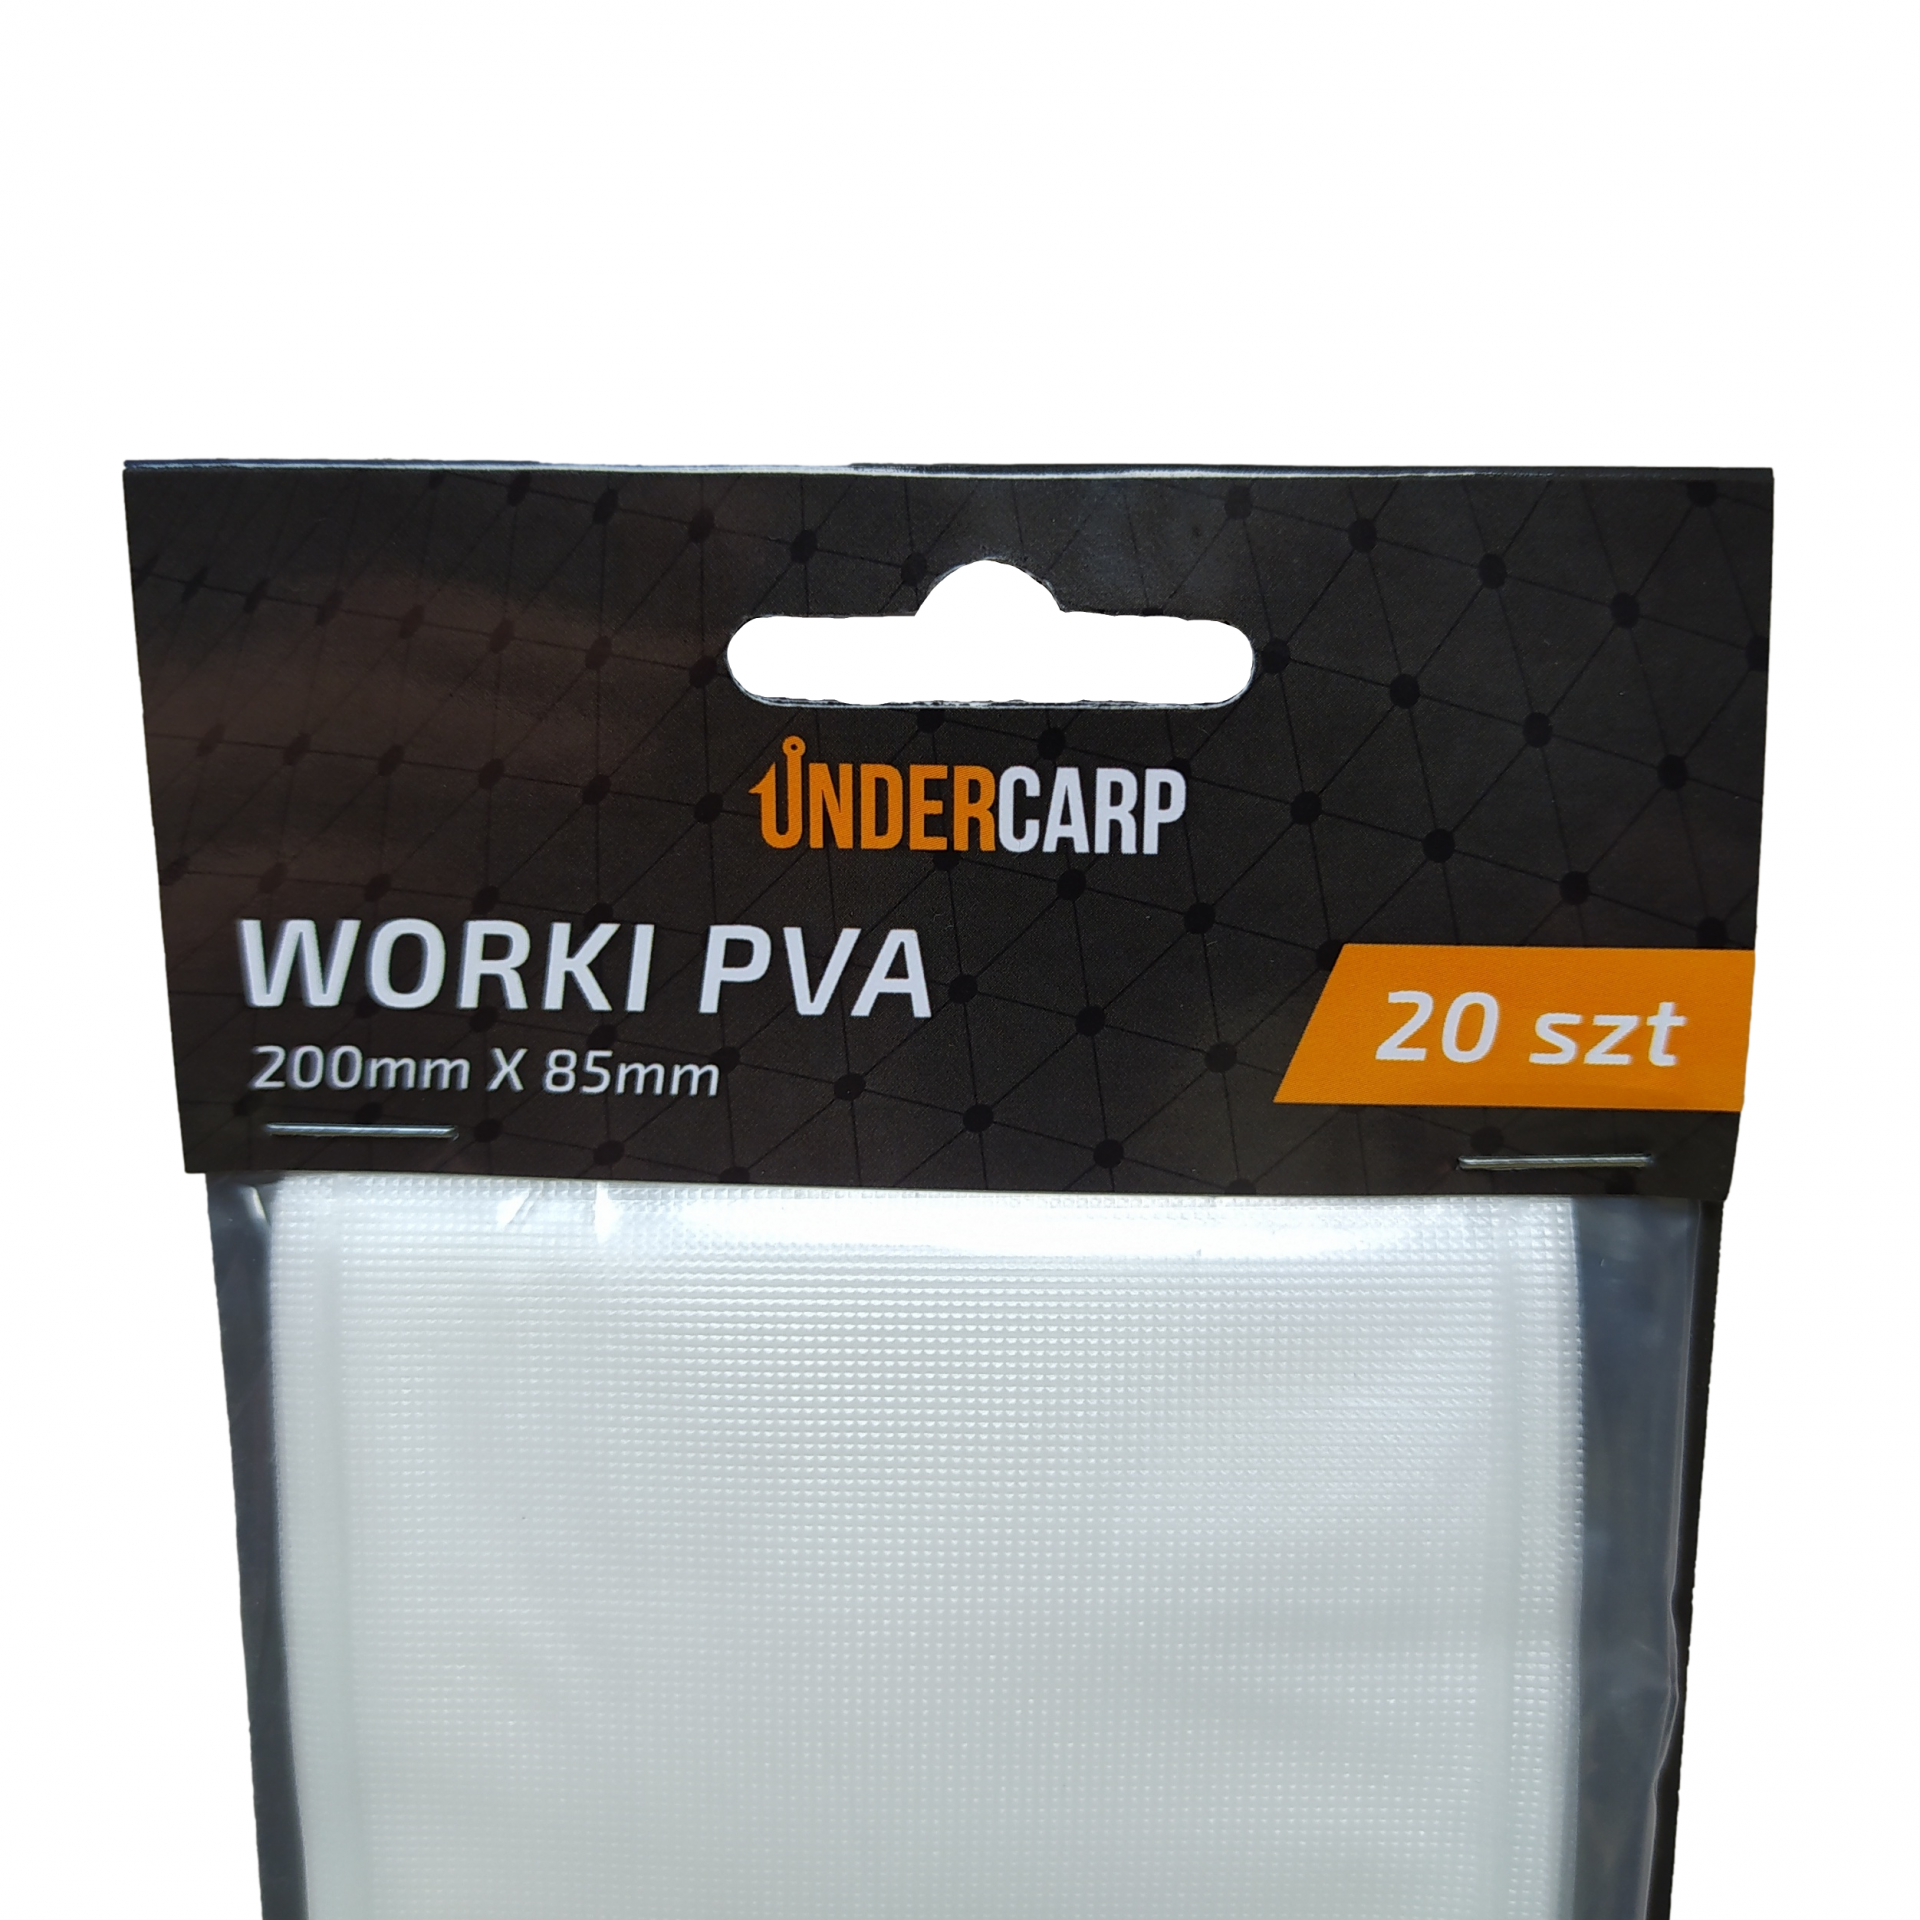 UnderCarp - Worki PVA 200mm x 85mm 20 szt.